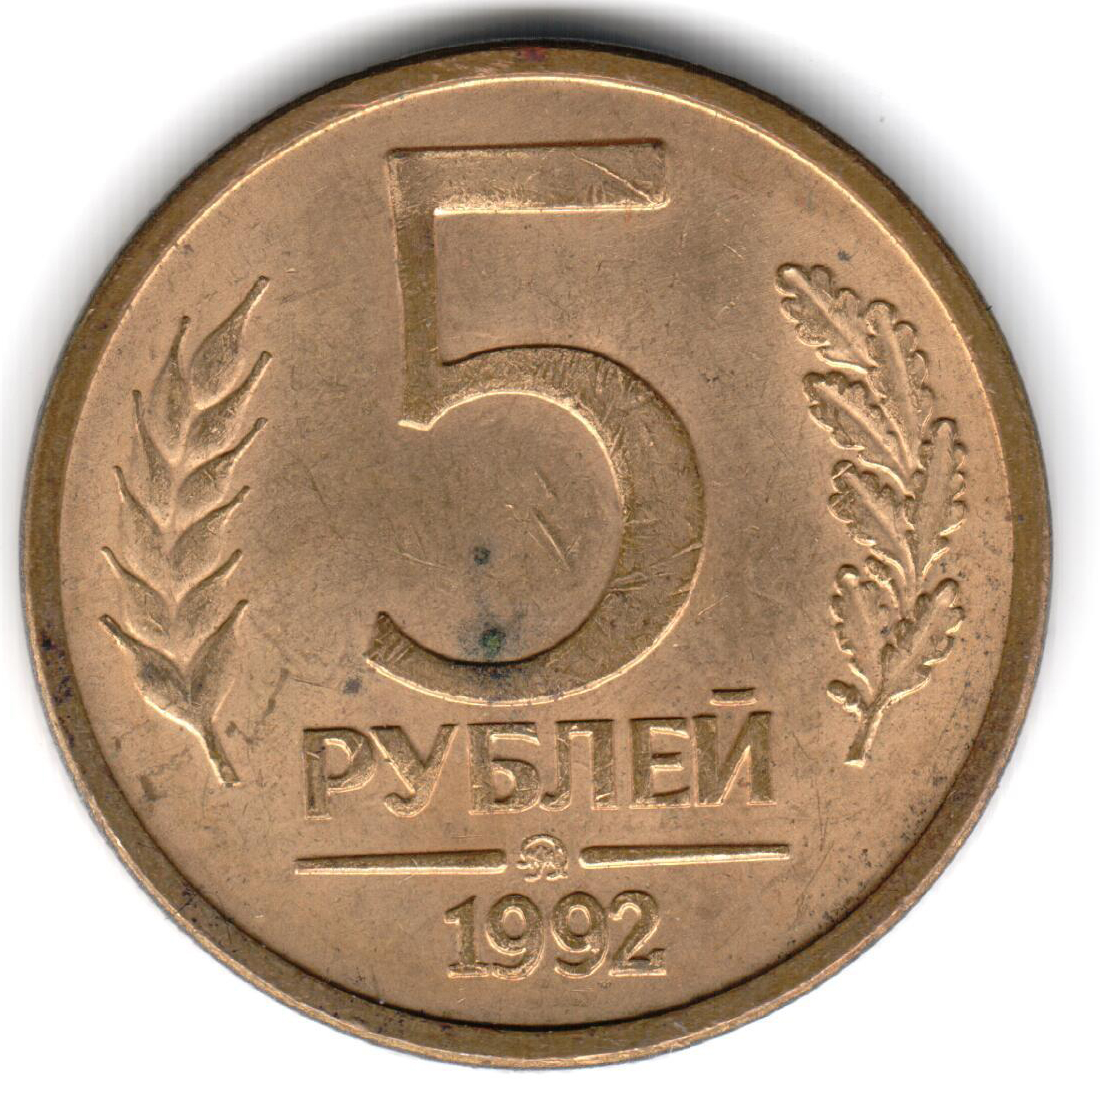 5 рублей в граммах. 5 Рублей 1992 года. Монета 5 рублей 1992. Монеты СССР 1992. 5 Руб 1992 года.